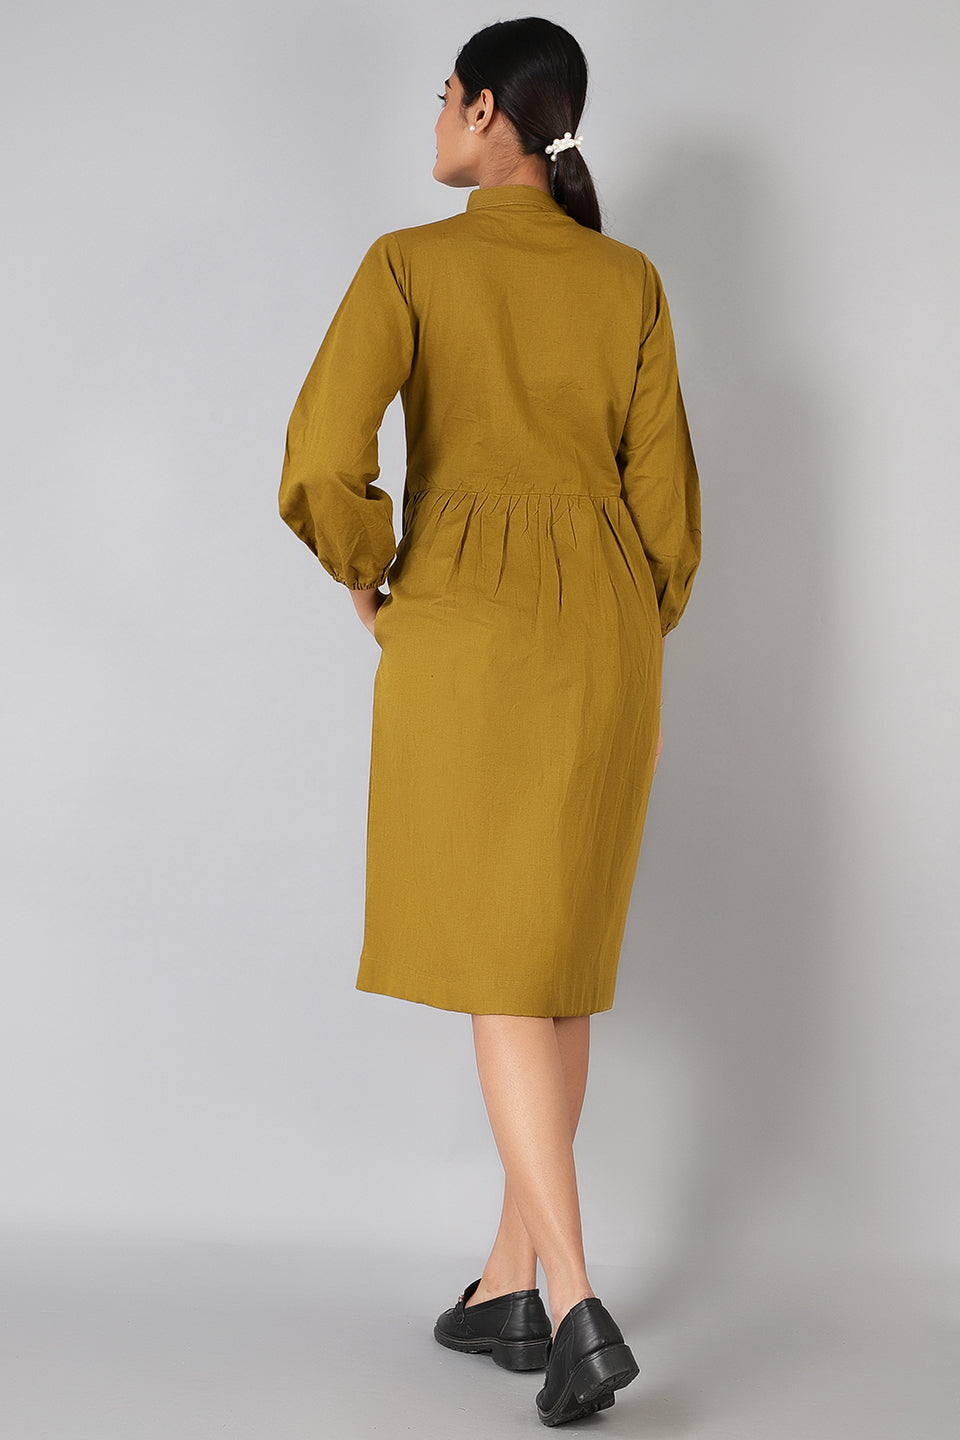 Cotton Linen Cotton-Linen-DS168-Dress-DS168 Dress